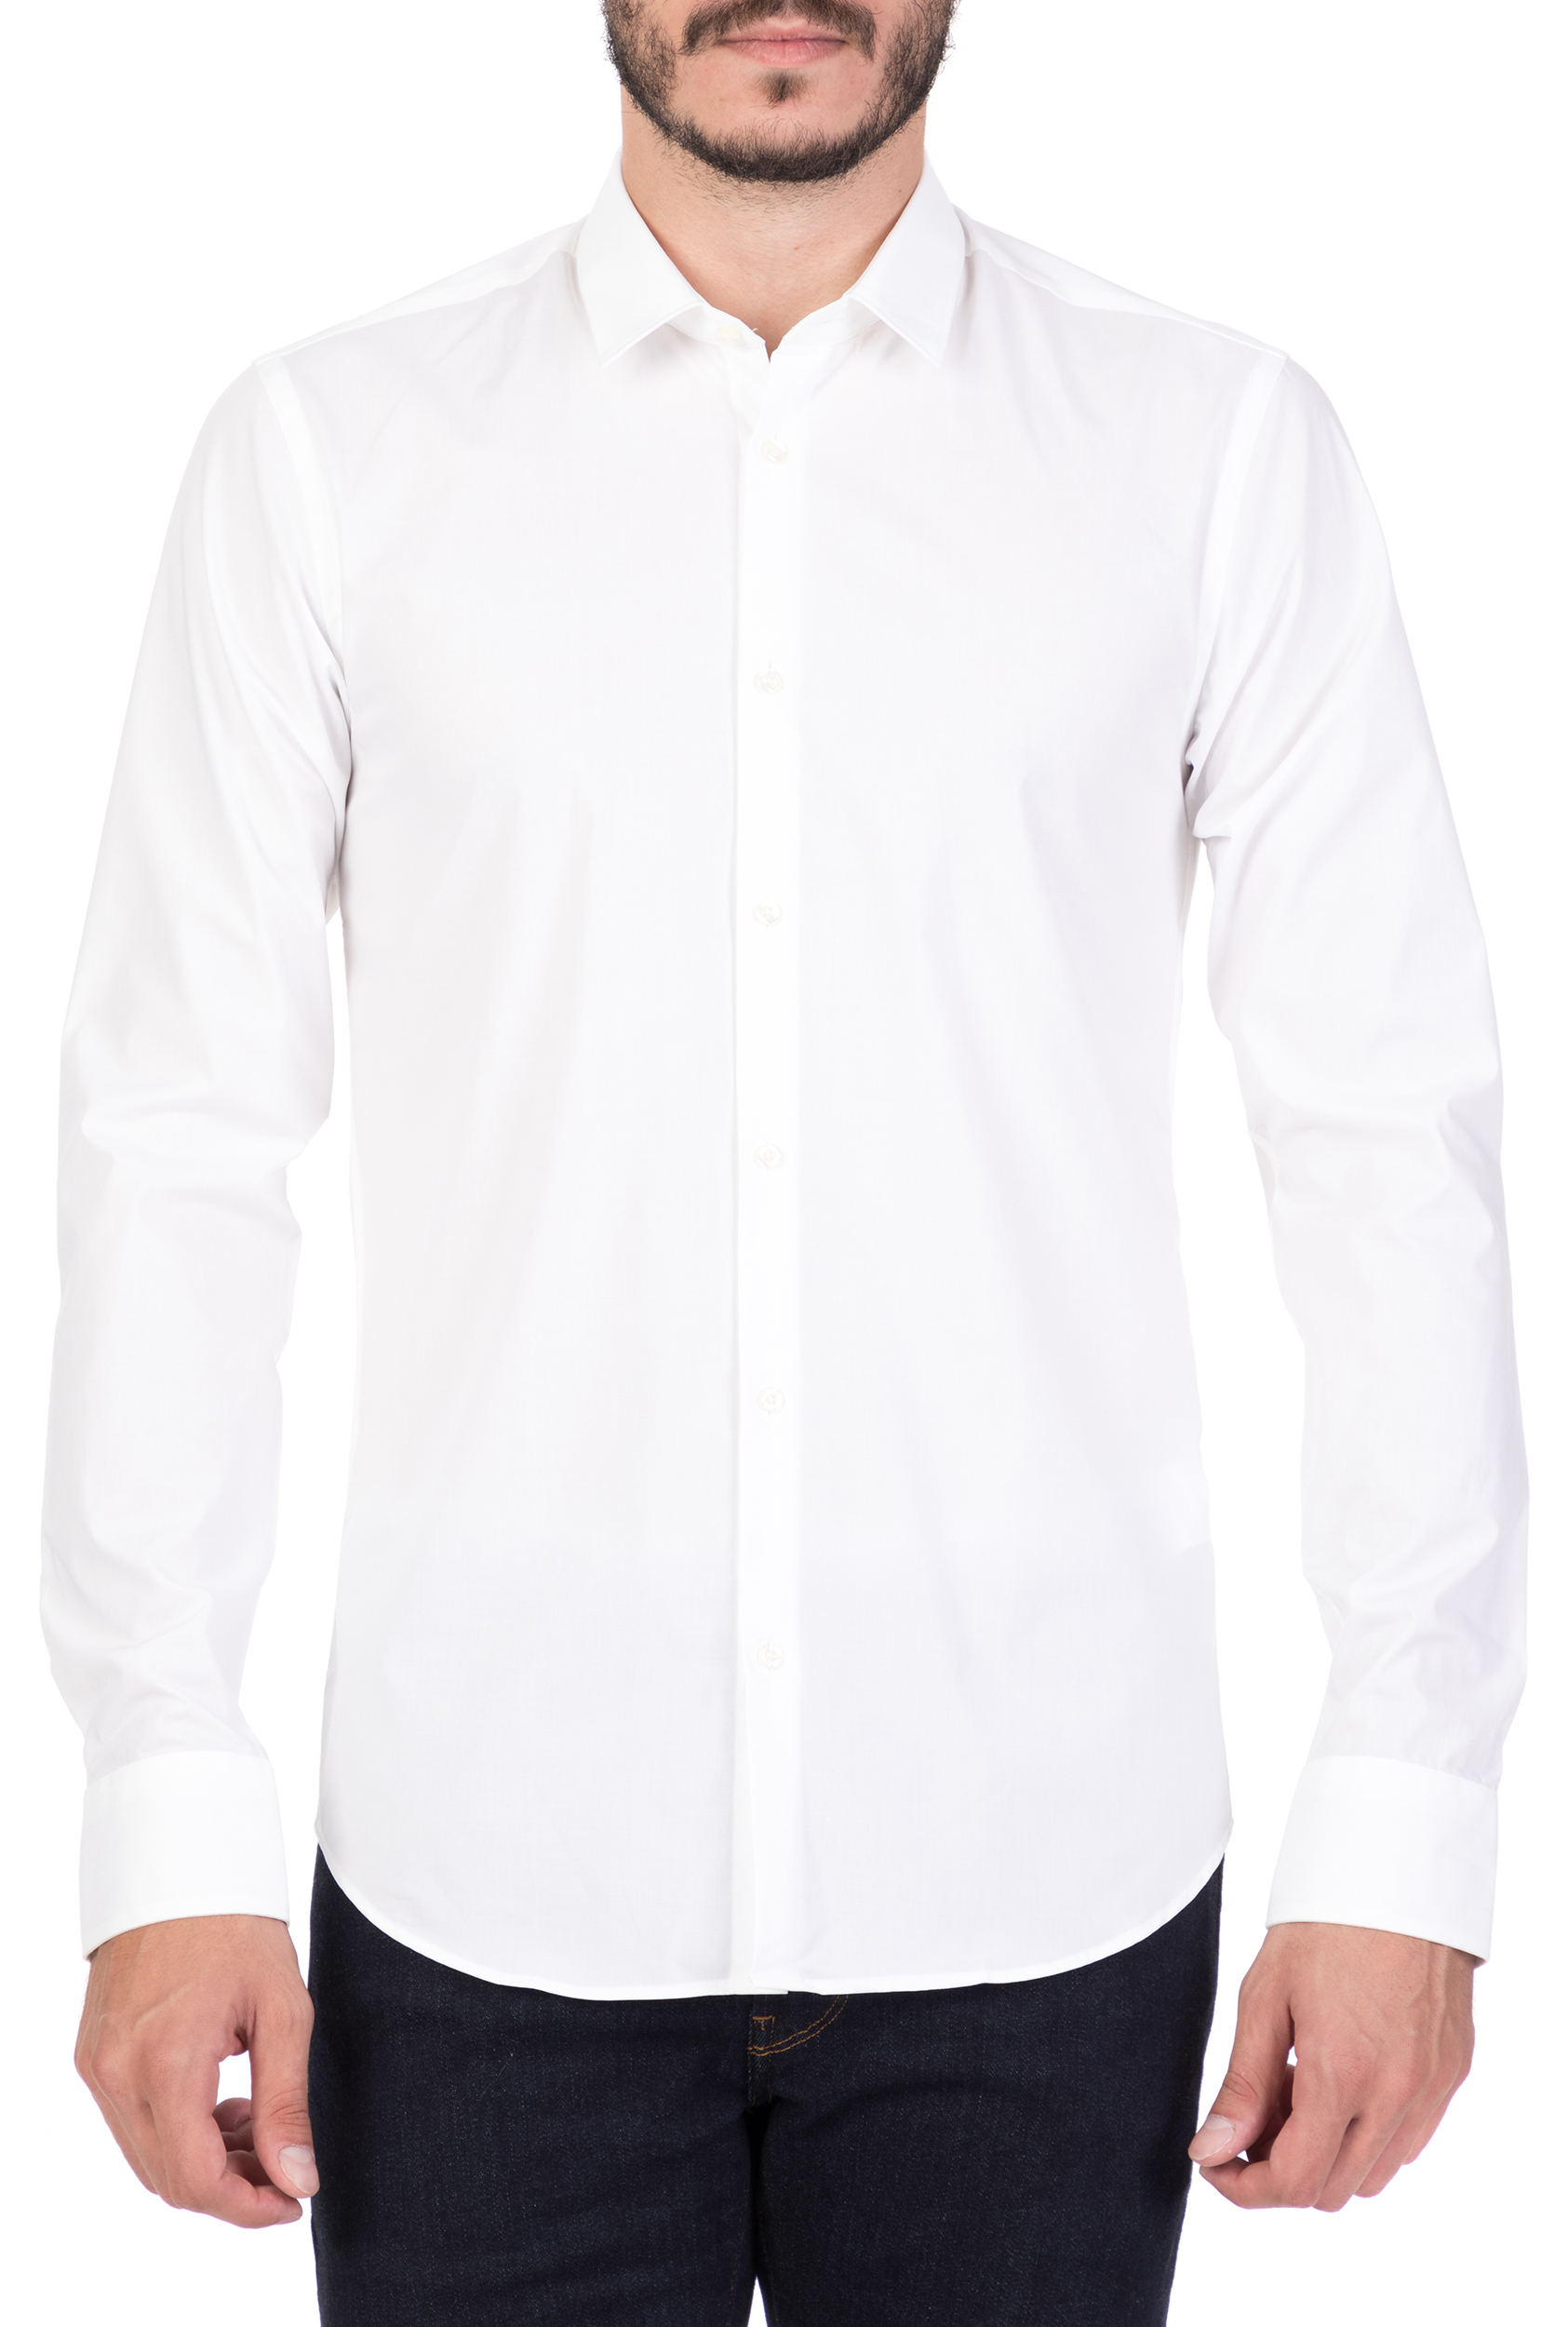 Ανδρικά/Ρούχα/Πουκάμισα/Μακρυμάνικα SCOTCH & SODA - Ανδρικό μακρυμάνικο πουκάμισο SCOTCH & SODA λευκό